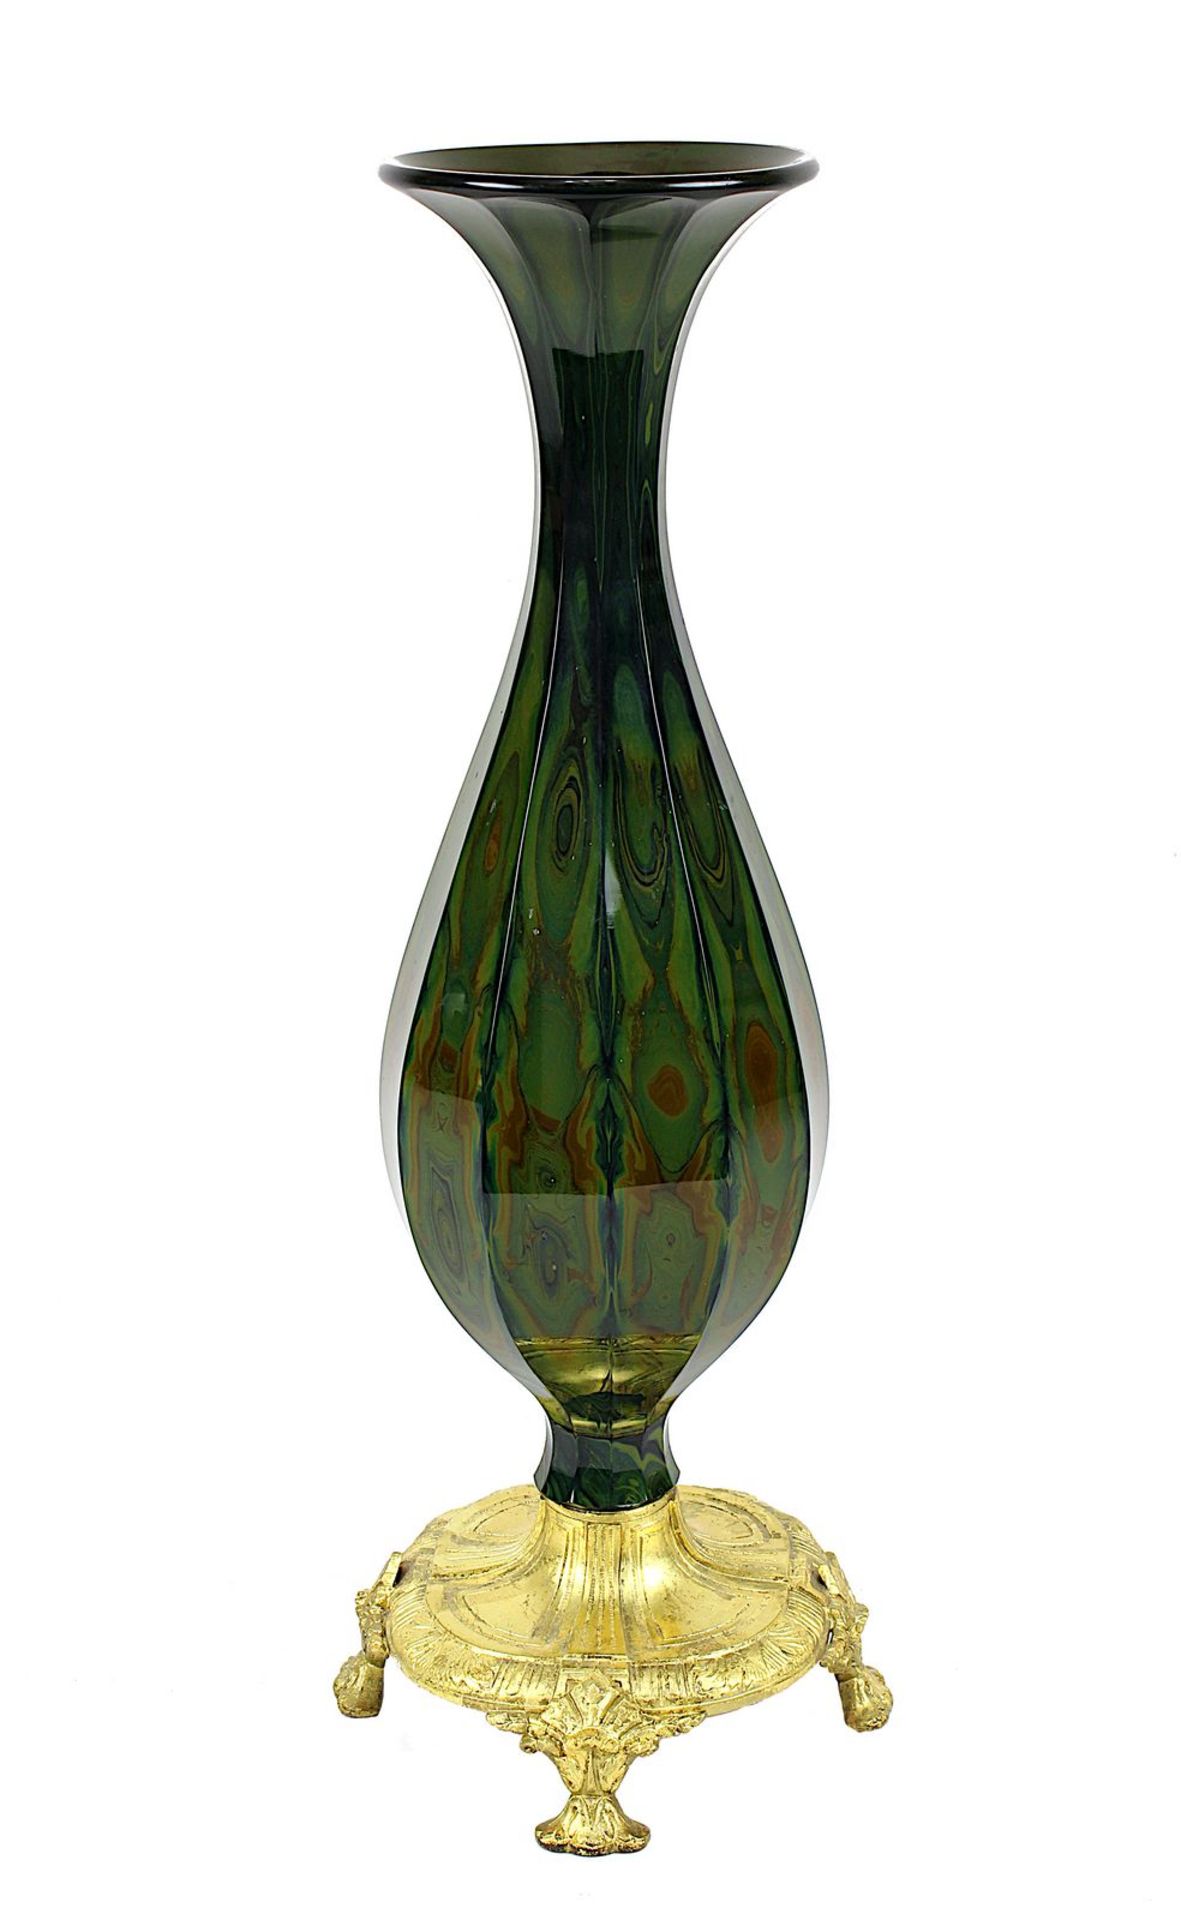 St. Louis Lithyalinglas-Vase mit vergoldeter Bronzebasis, Frankreich 19. Jh., blusterförmiger Korpus - Bild 2 aus 2